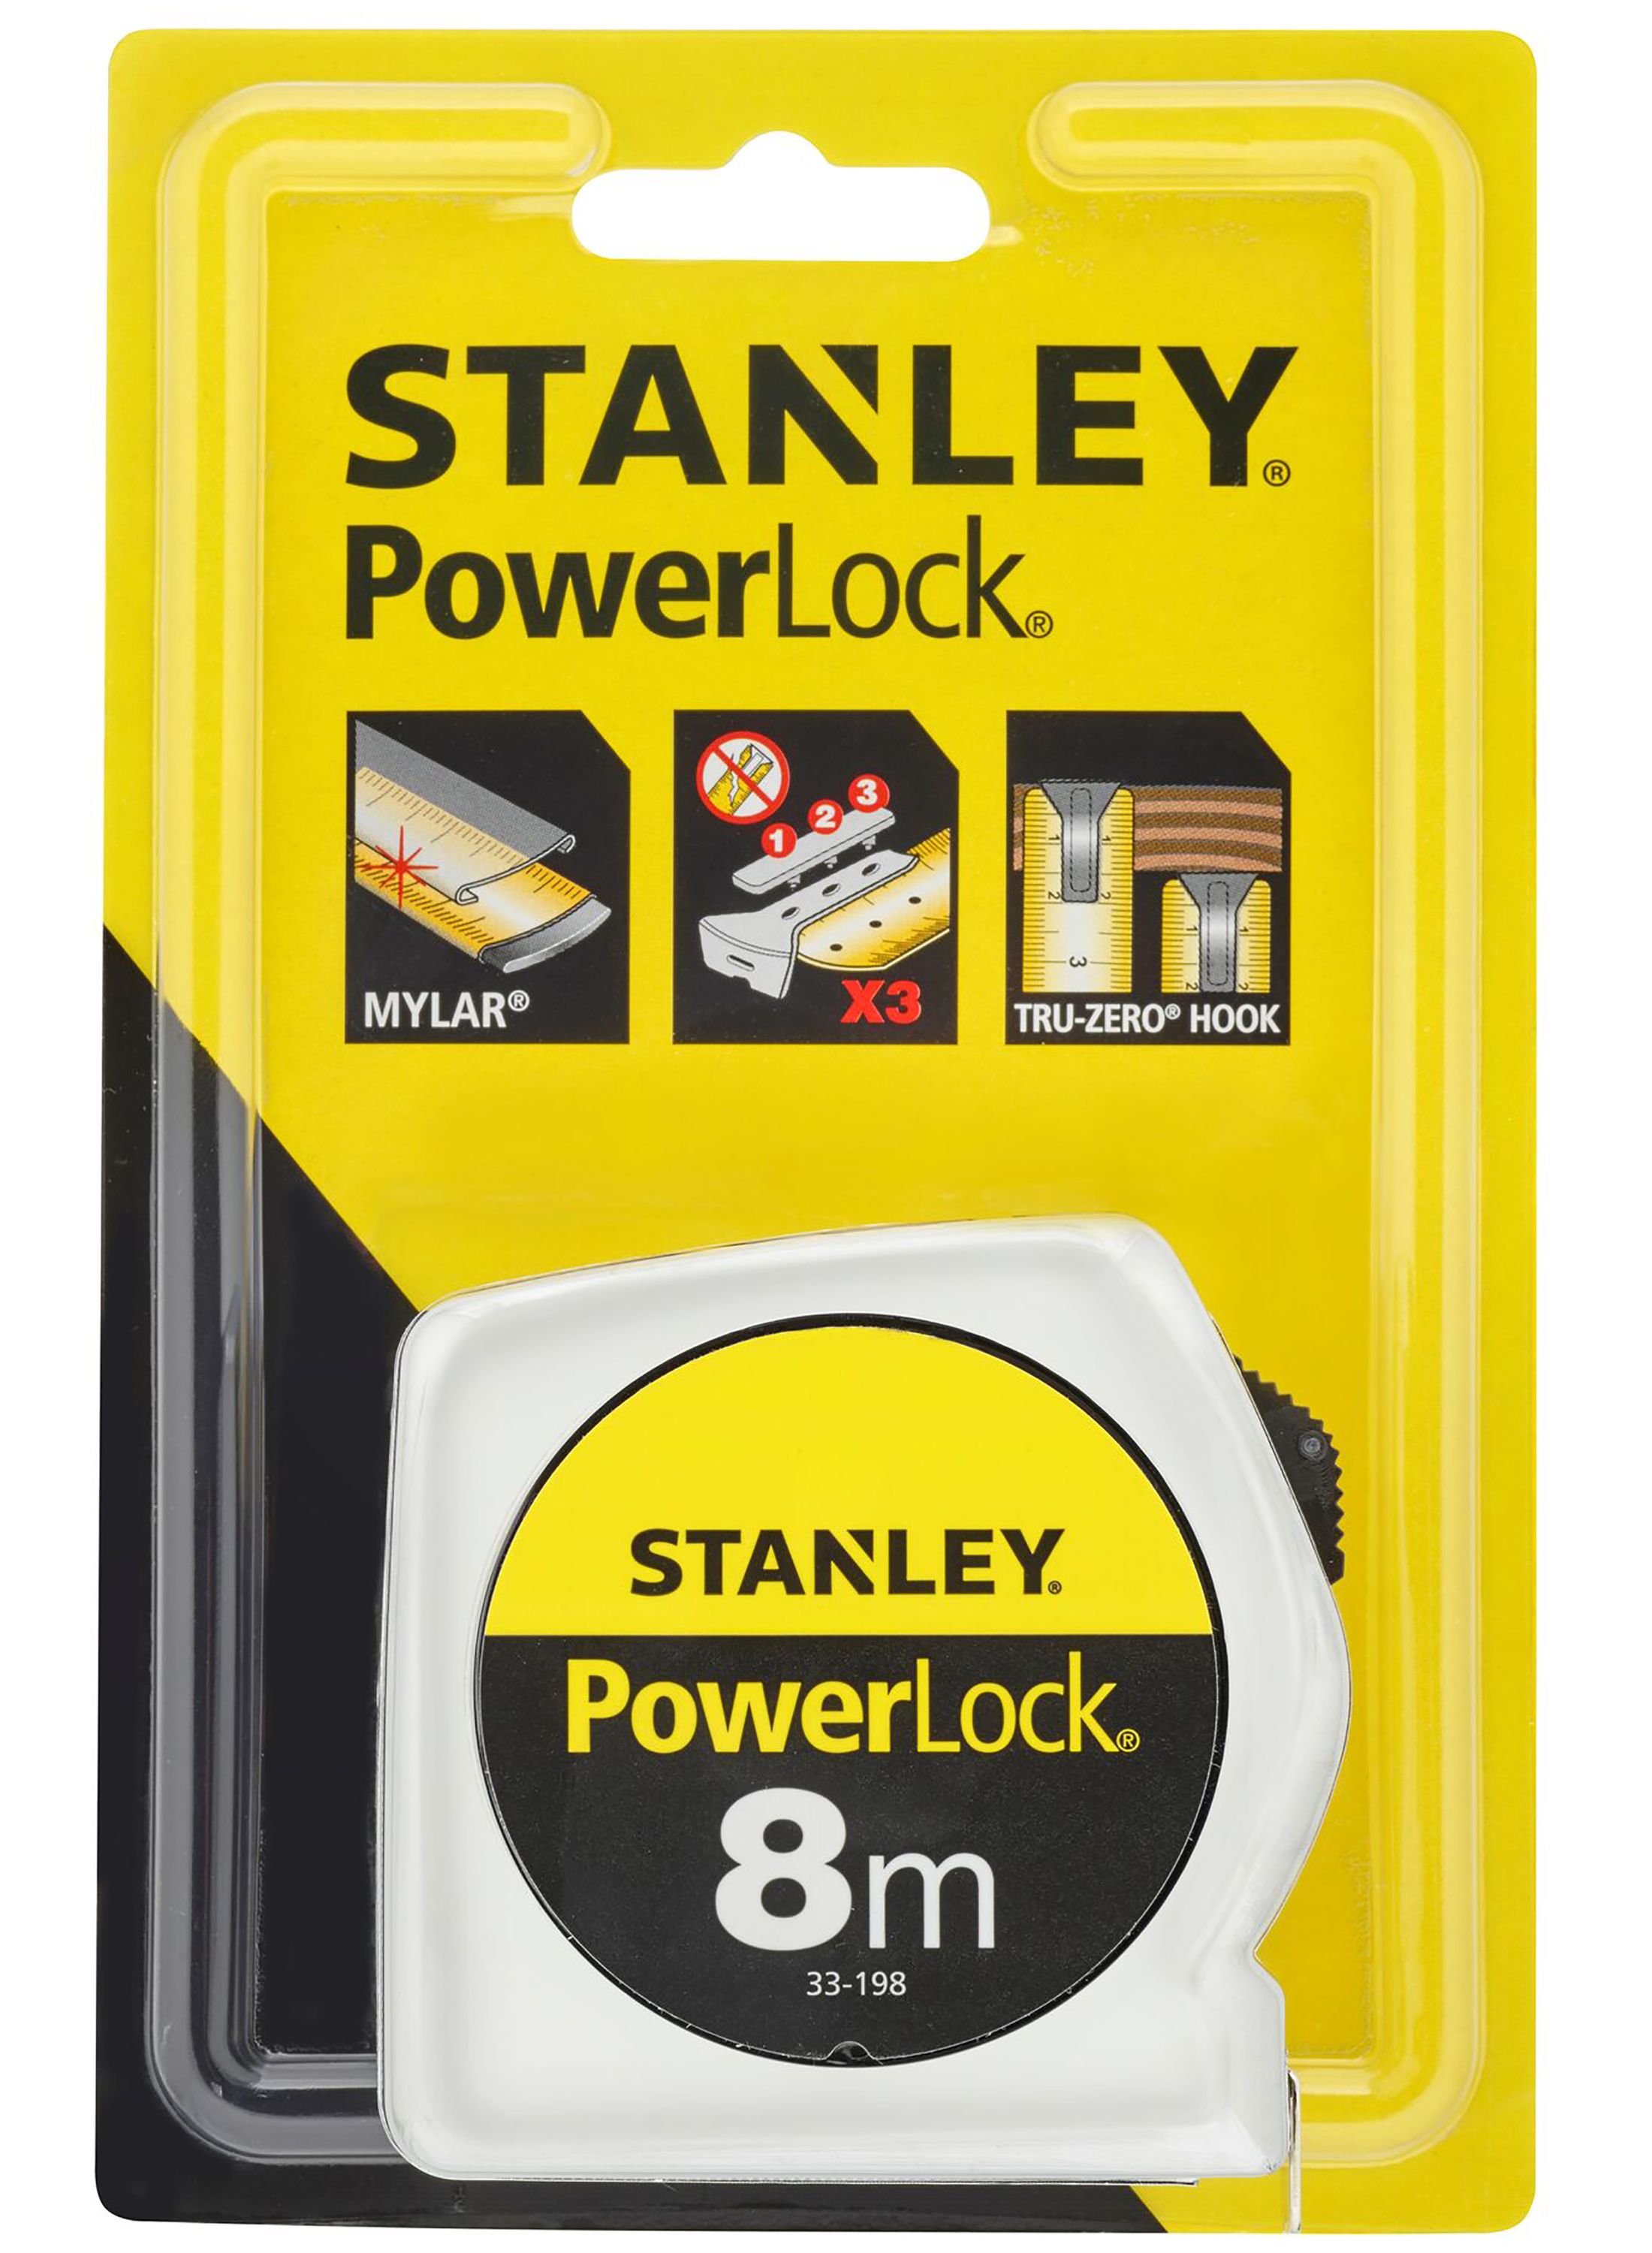 Powerlock 8m Measure Tape Stanley - 2